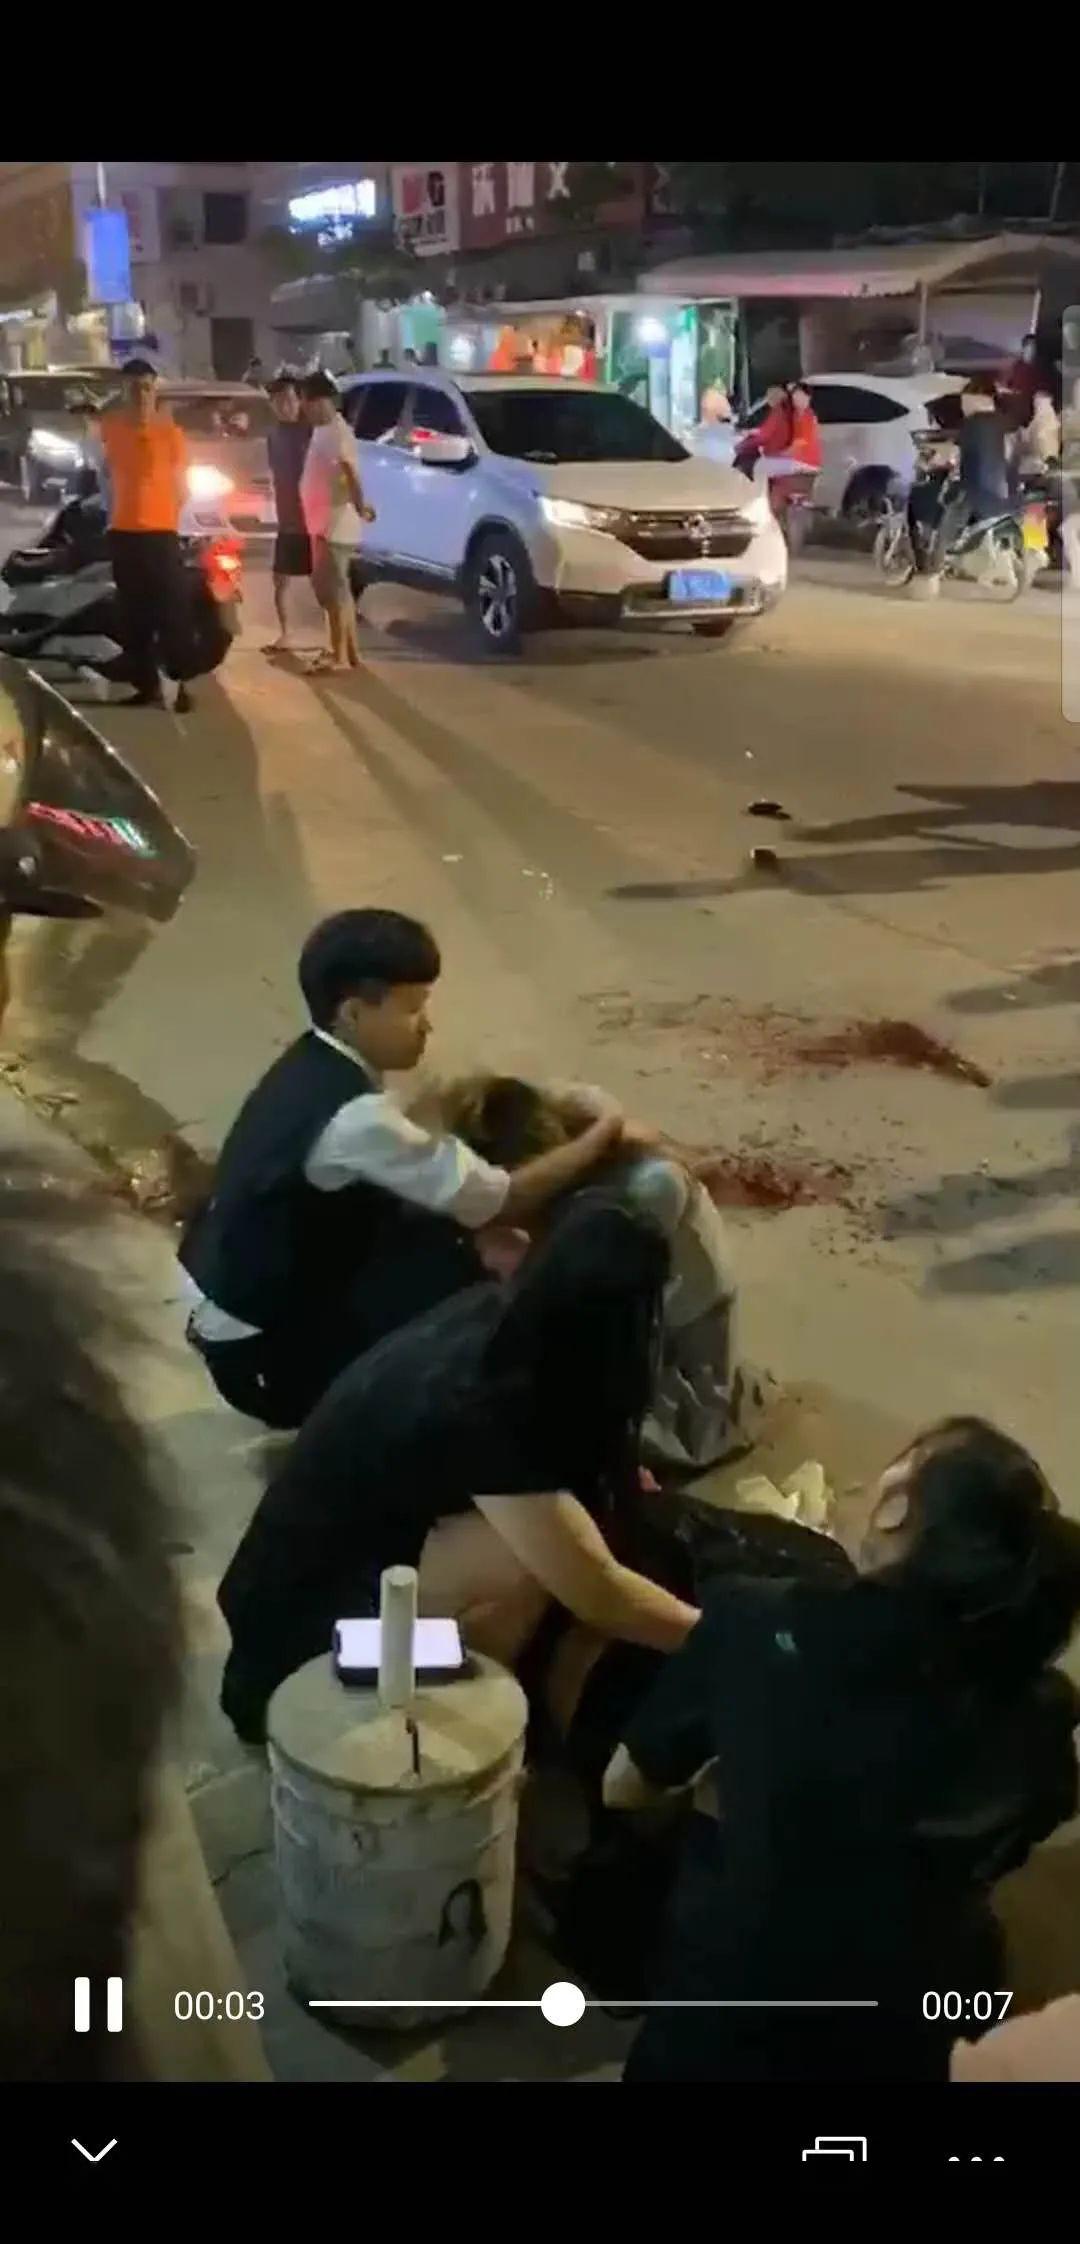 湛江呢个14岁女孩竟如此凶残一冲突马上砍断手指并警方通报来了